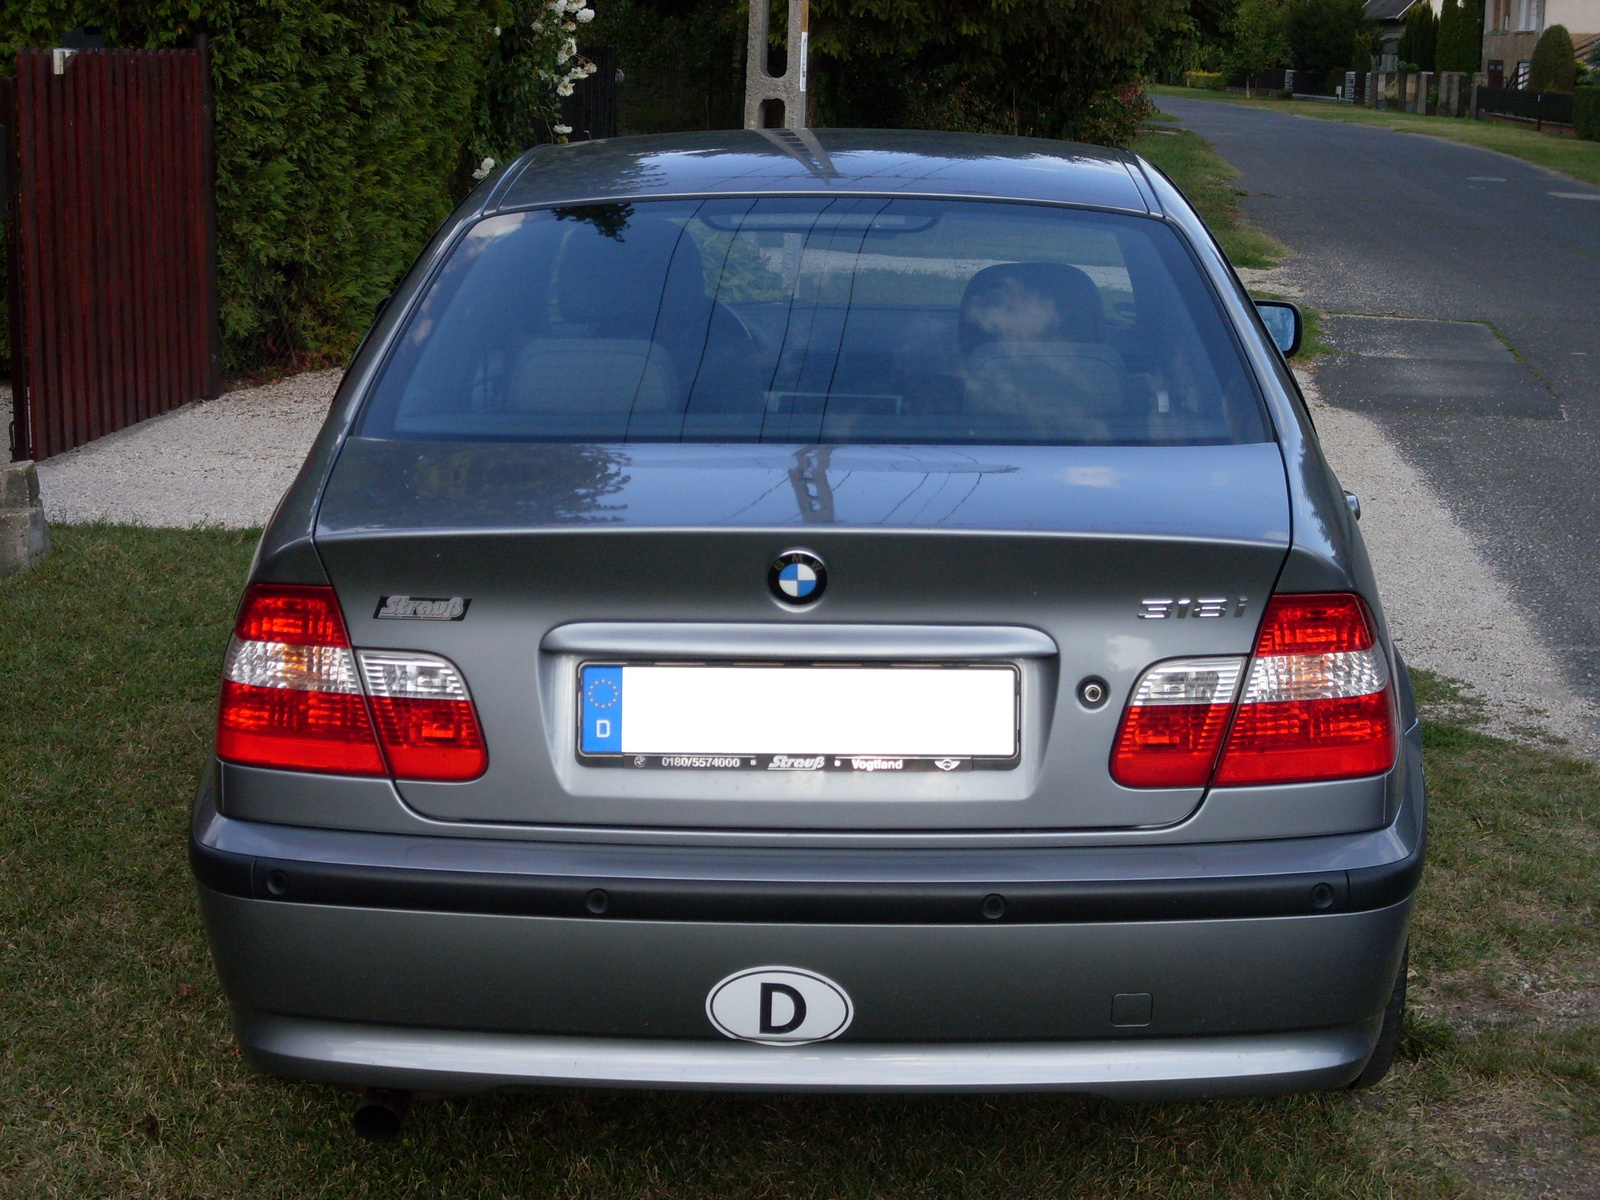 BMW 318i (e46)